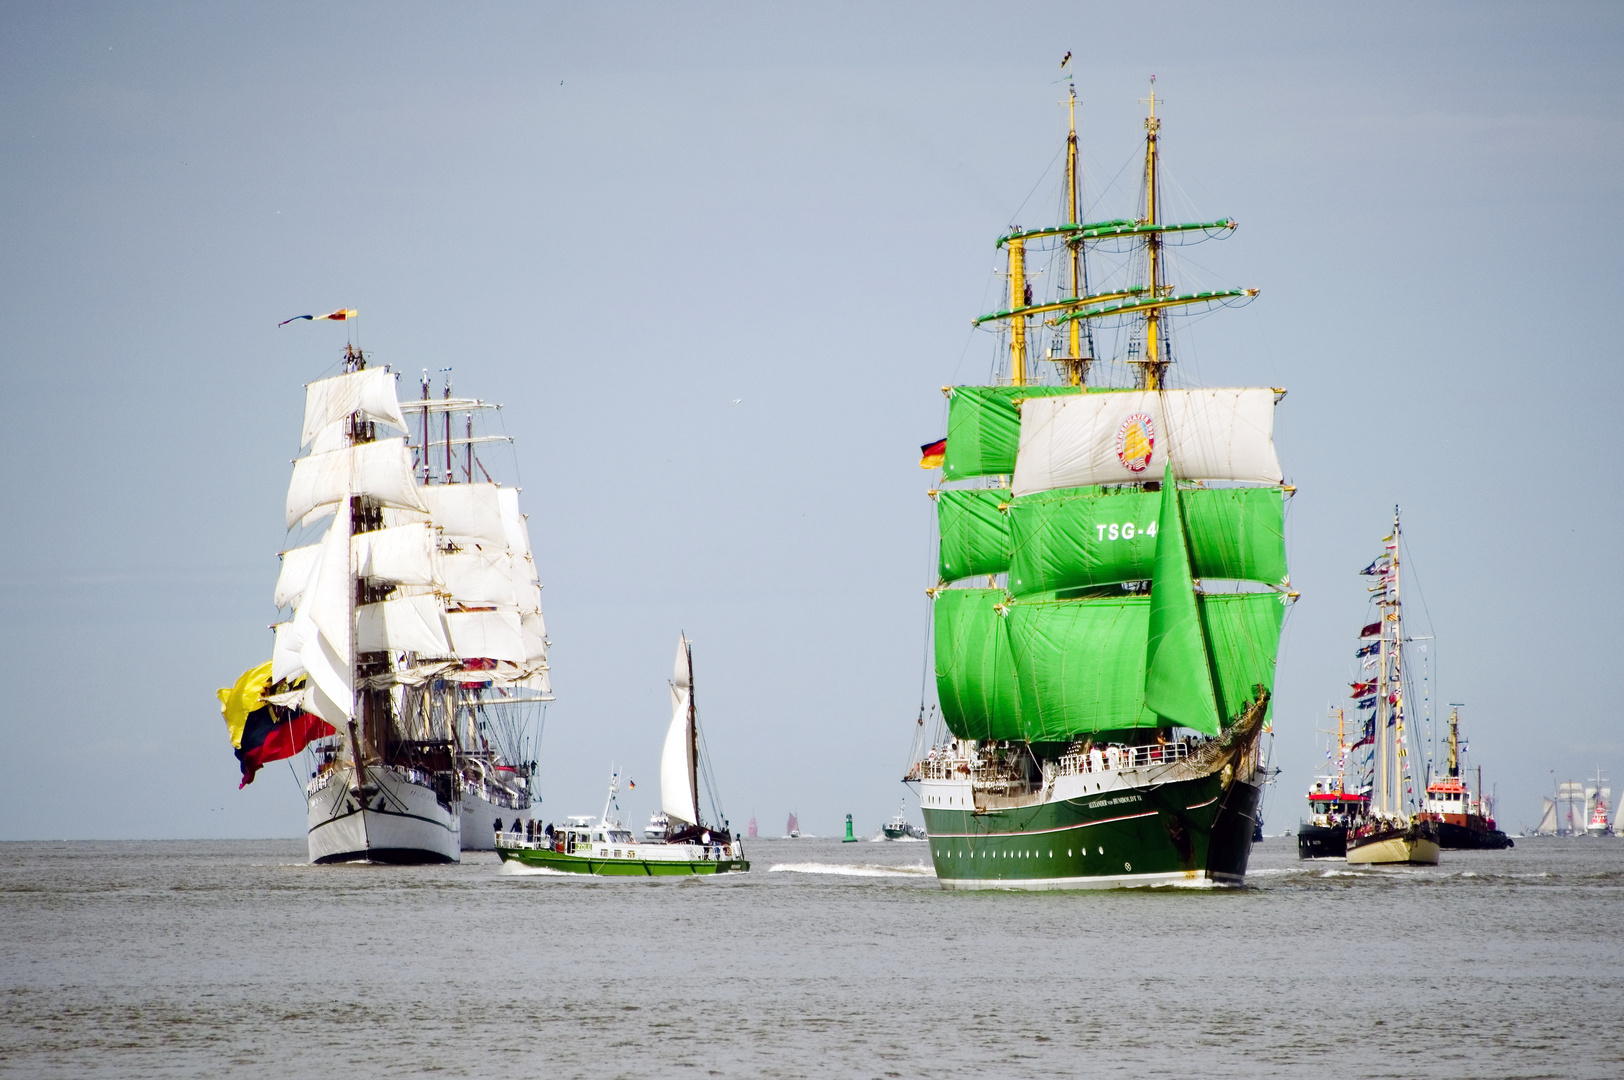 Alexander von Humbold bei der Einlaufparade zur Sail 2015 in Bremerhaven.